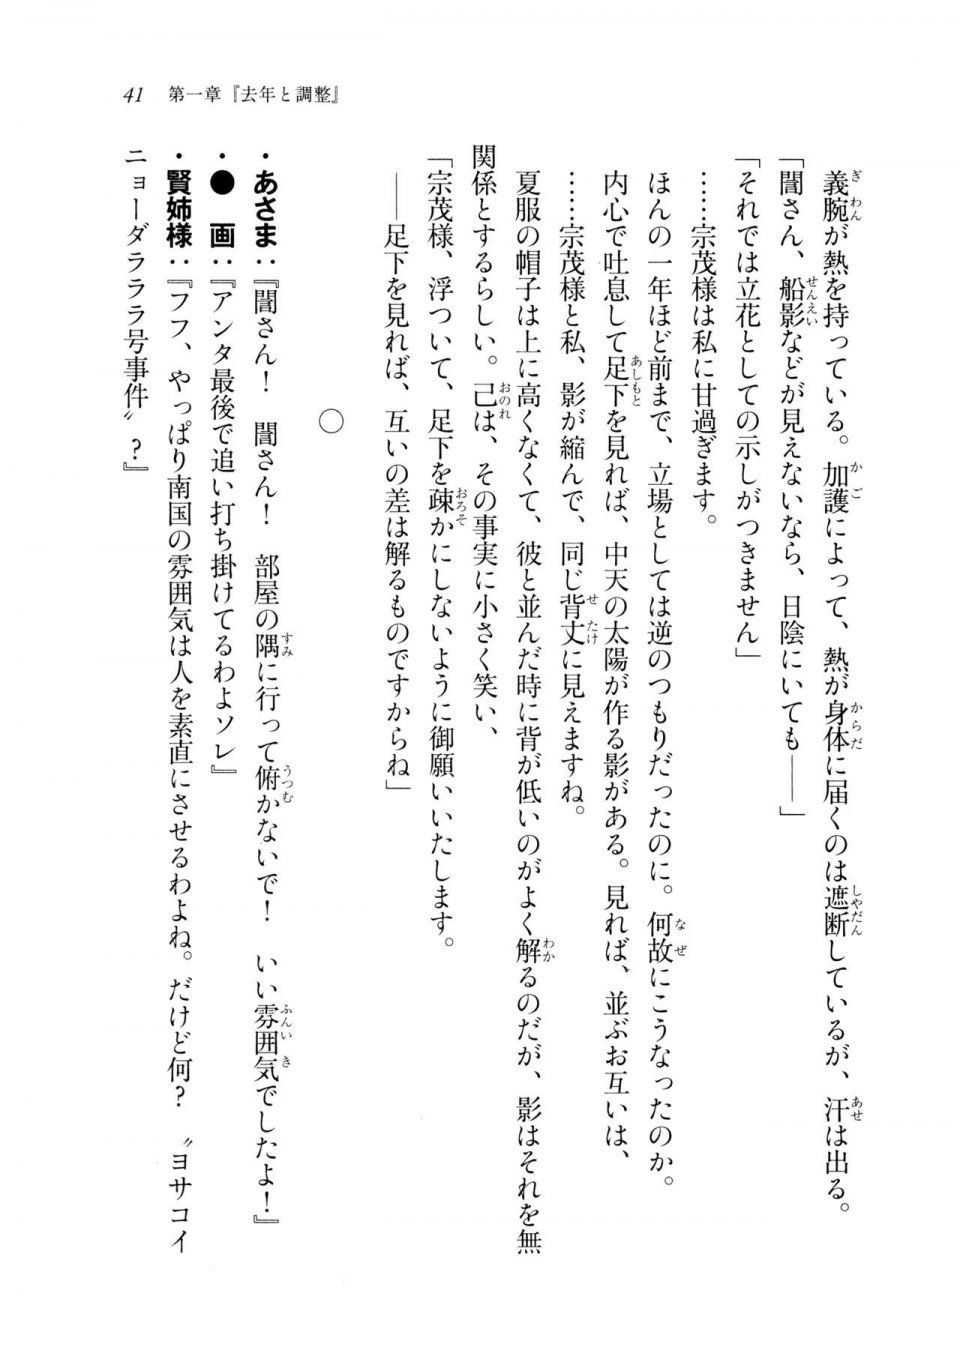 Kyoukai Senjou no Horizon LN Sidestory Vol 2 - Photo #39